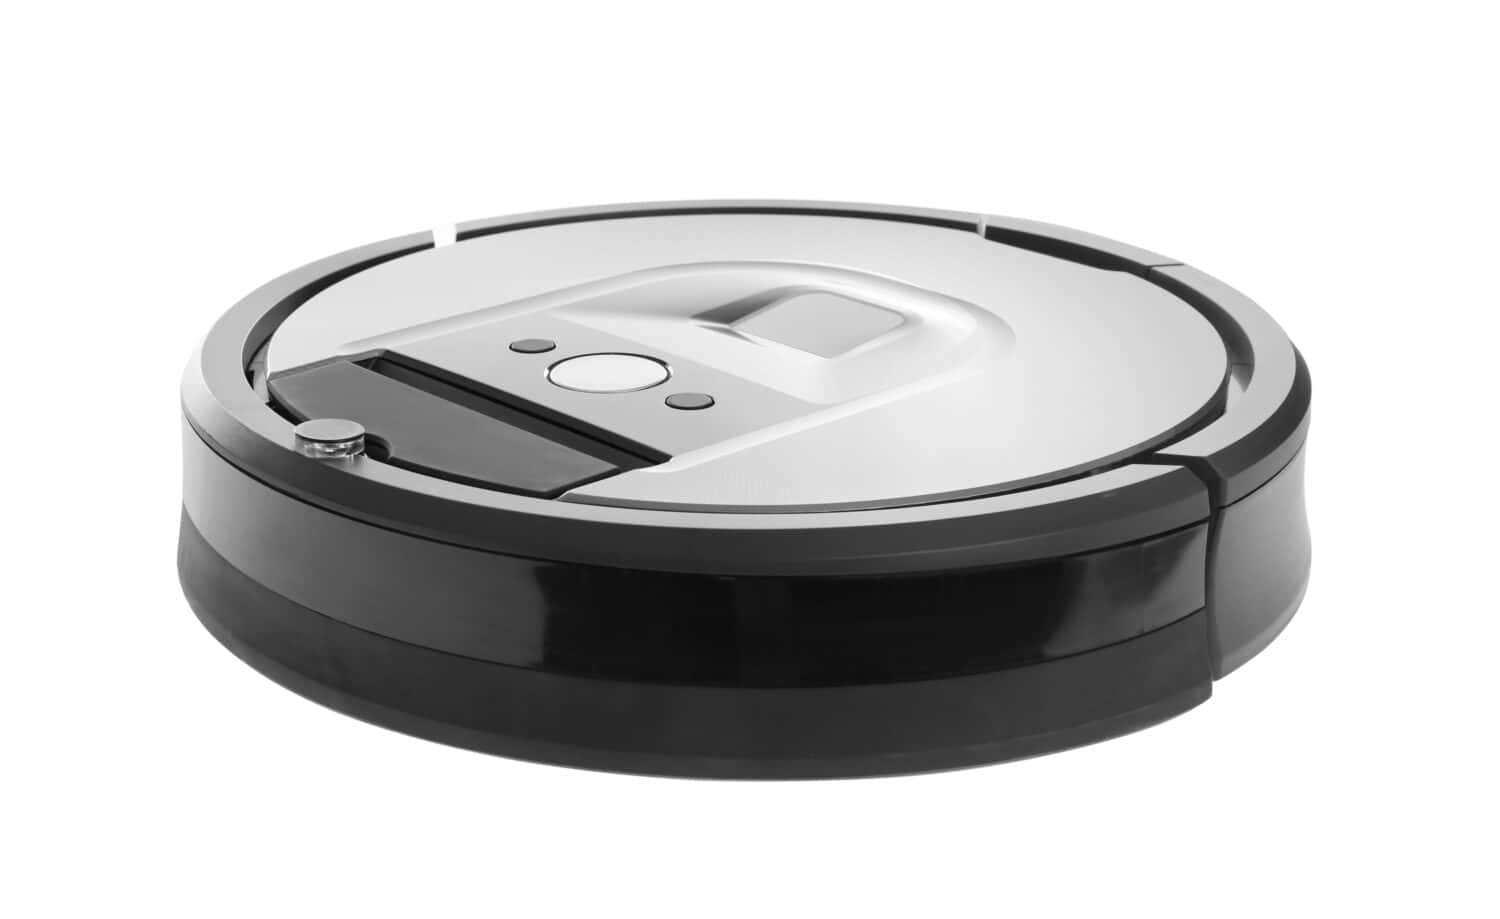 iRobot Roomba i7 vs j7 (Why j7 is Better)